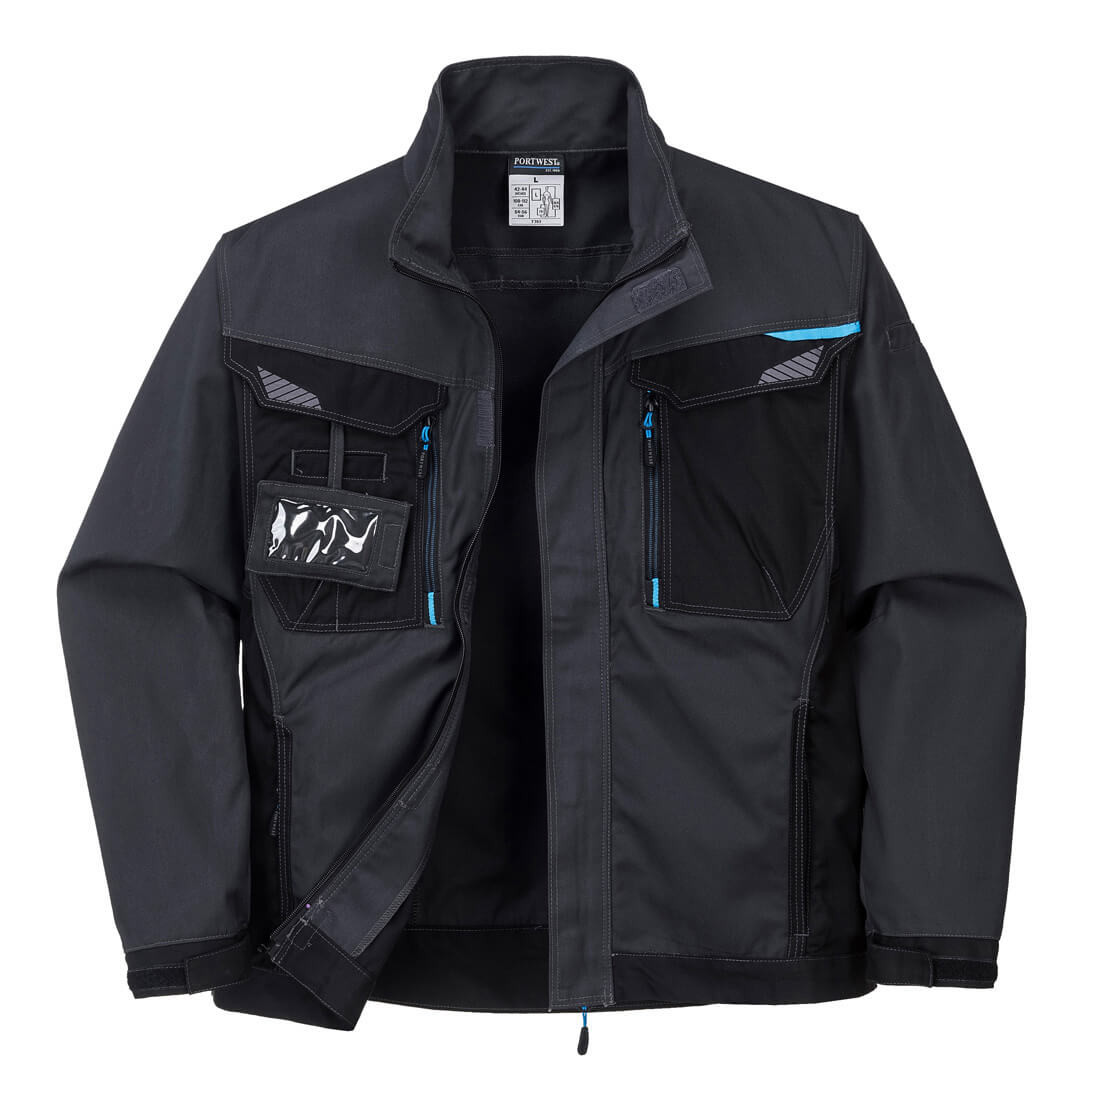 Veste WX3 - Les vêtements de protection